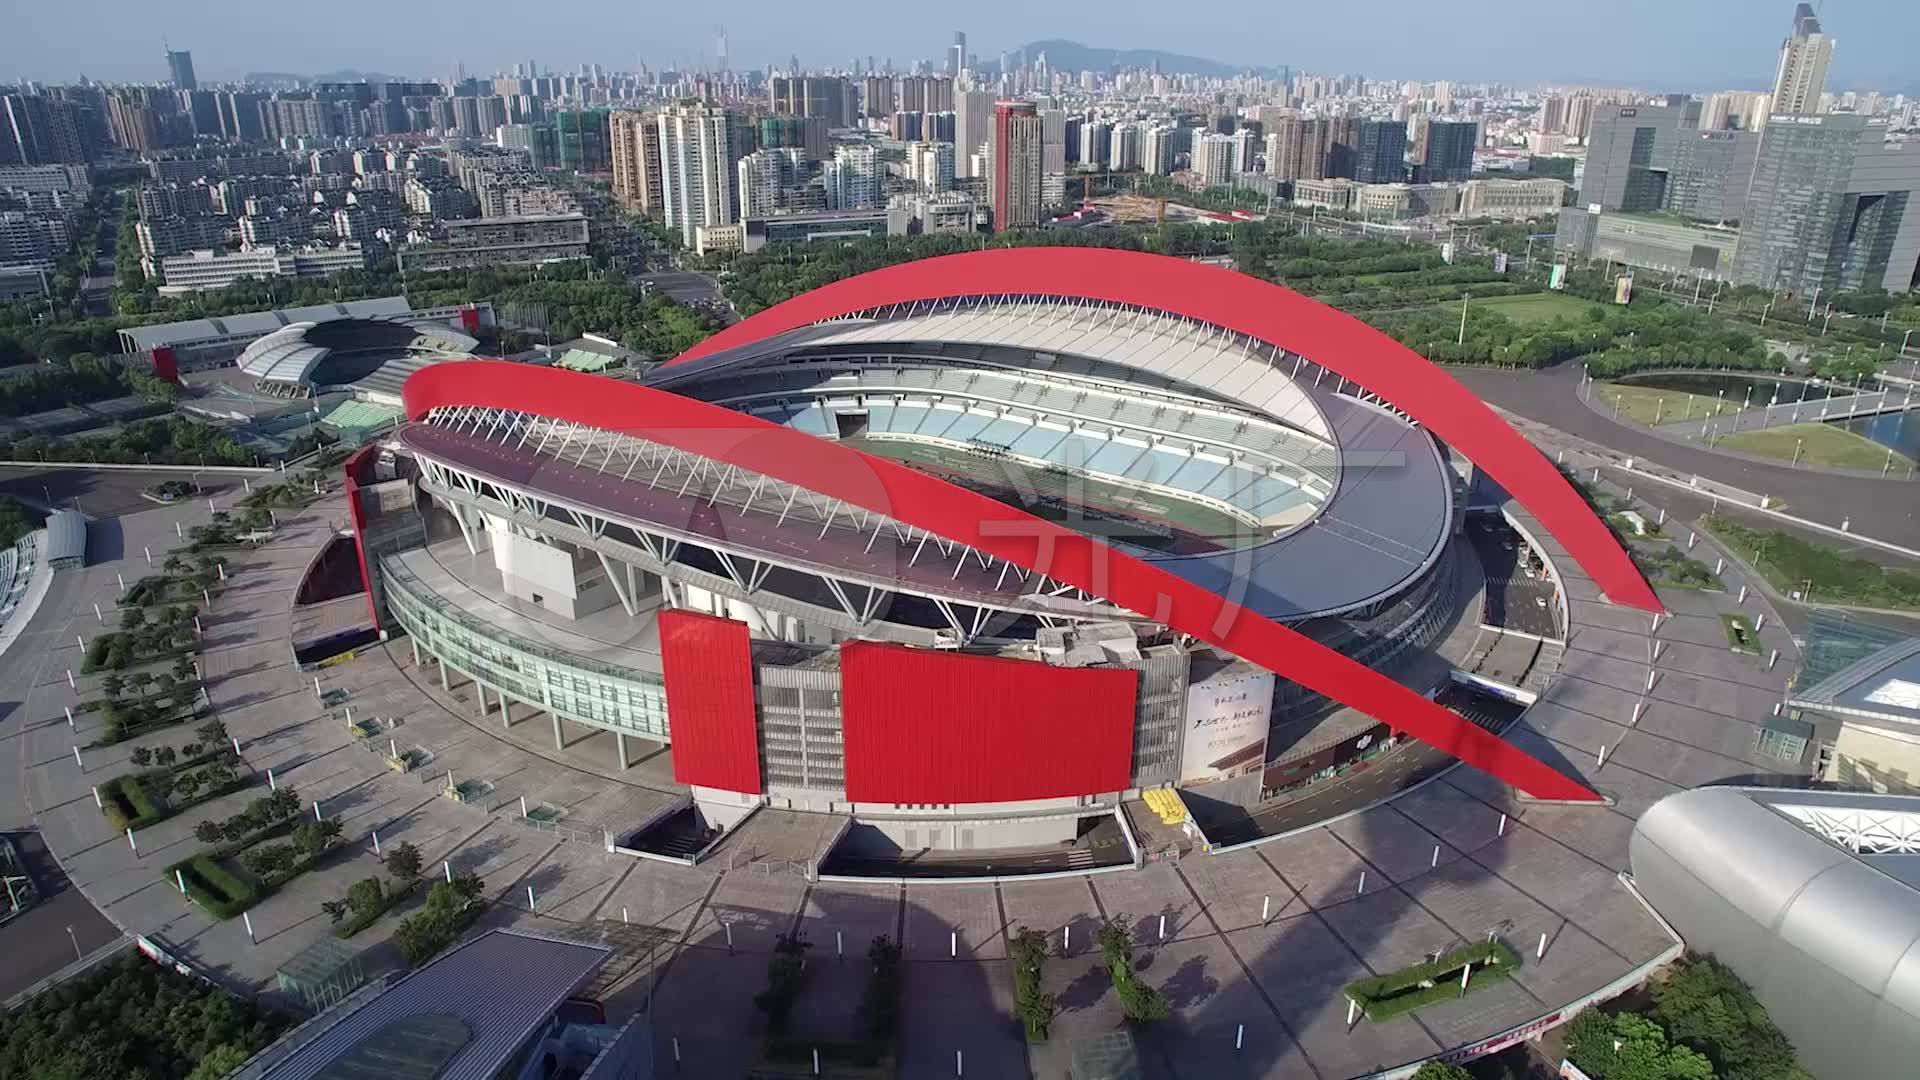 【携程攻略】北京奥林匹克公园景点,奥林匹克公园是北京2008年奥运会的主要举办地，有著名的鸟巢、水立方…